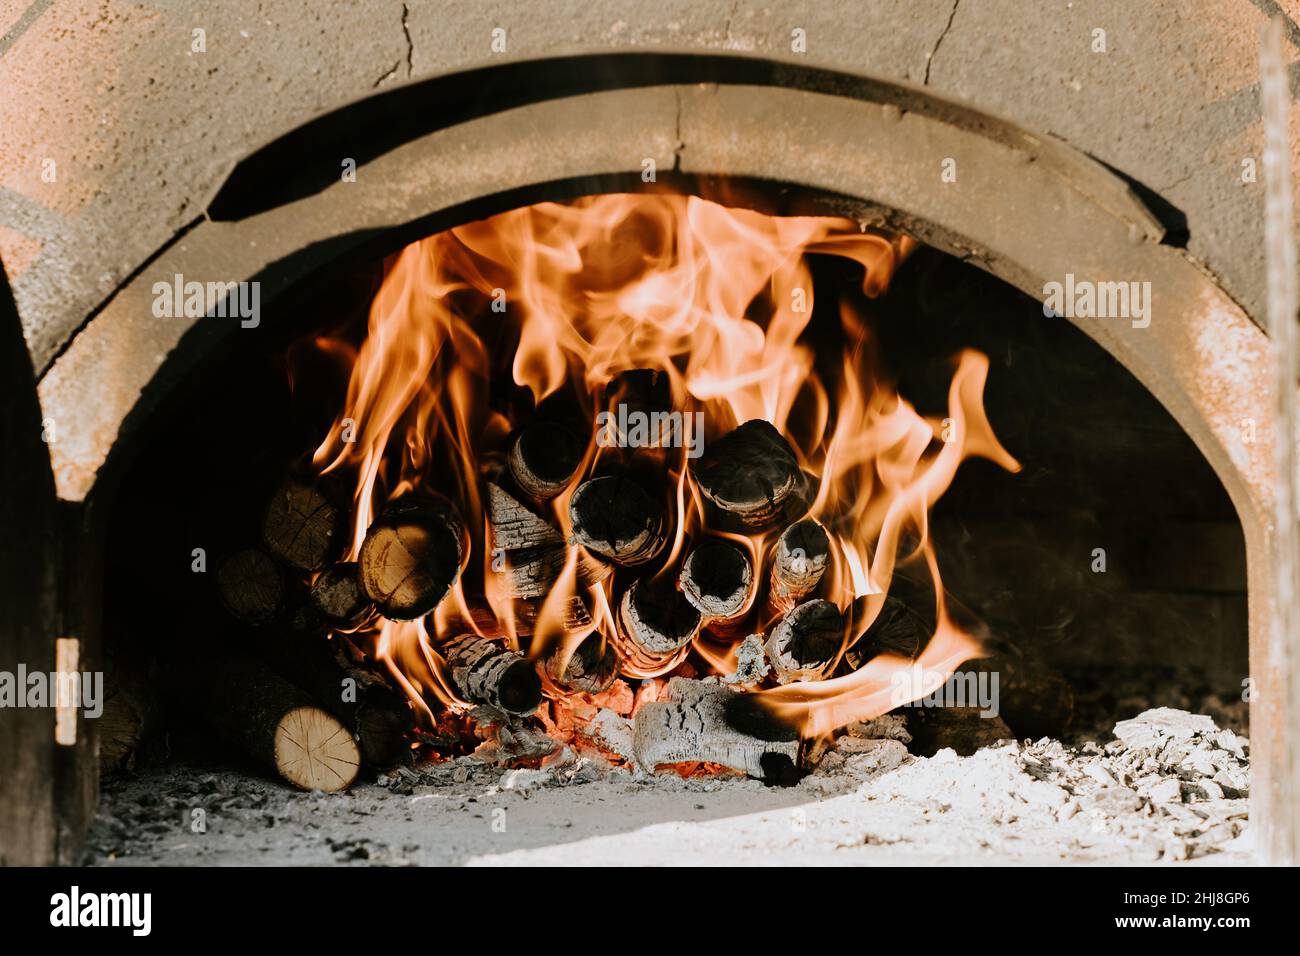 Primo piano di barbecue, pizza fatta in casa, mettendo la pizza nel forno a legna per cuocere Foto Stock